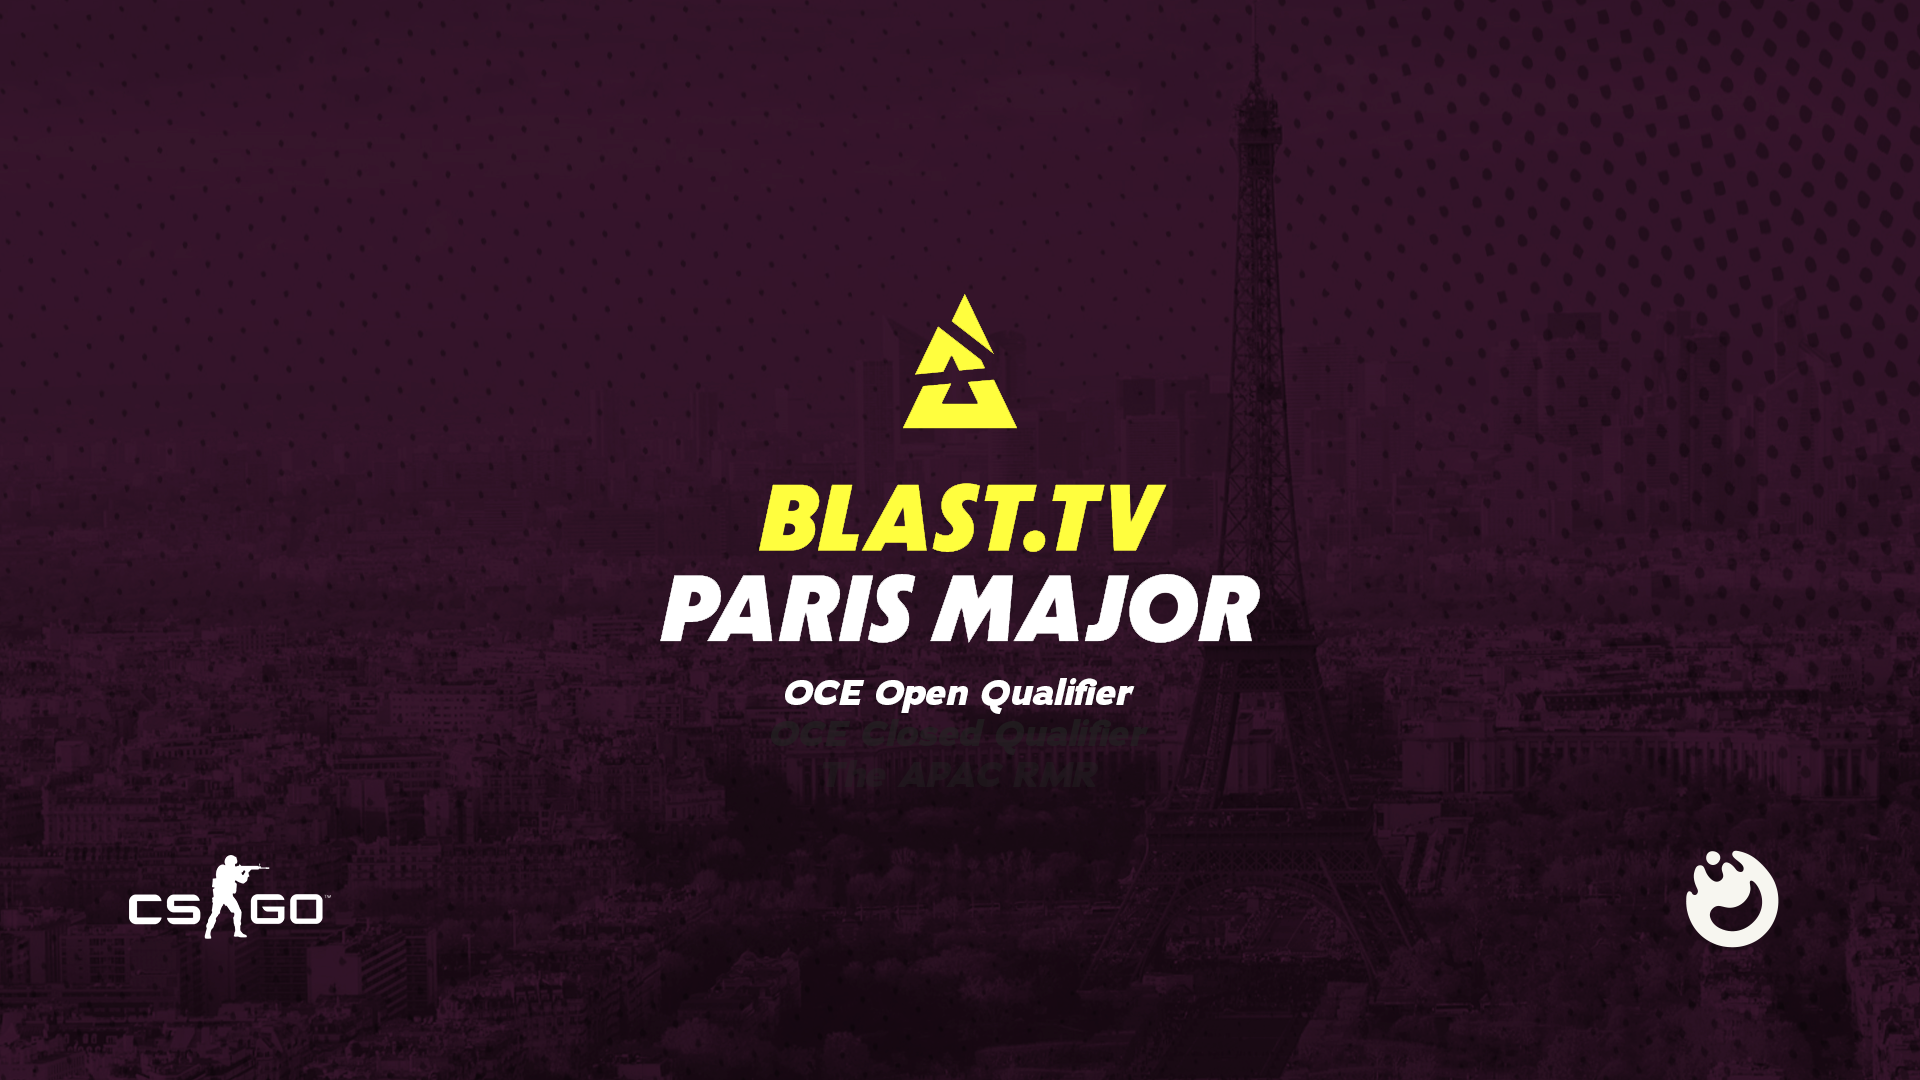 BLAST 巴黎 OCE 封闭式预选赛的团队名单最终确定